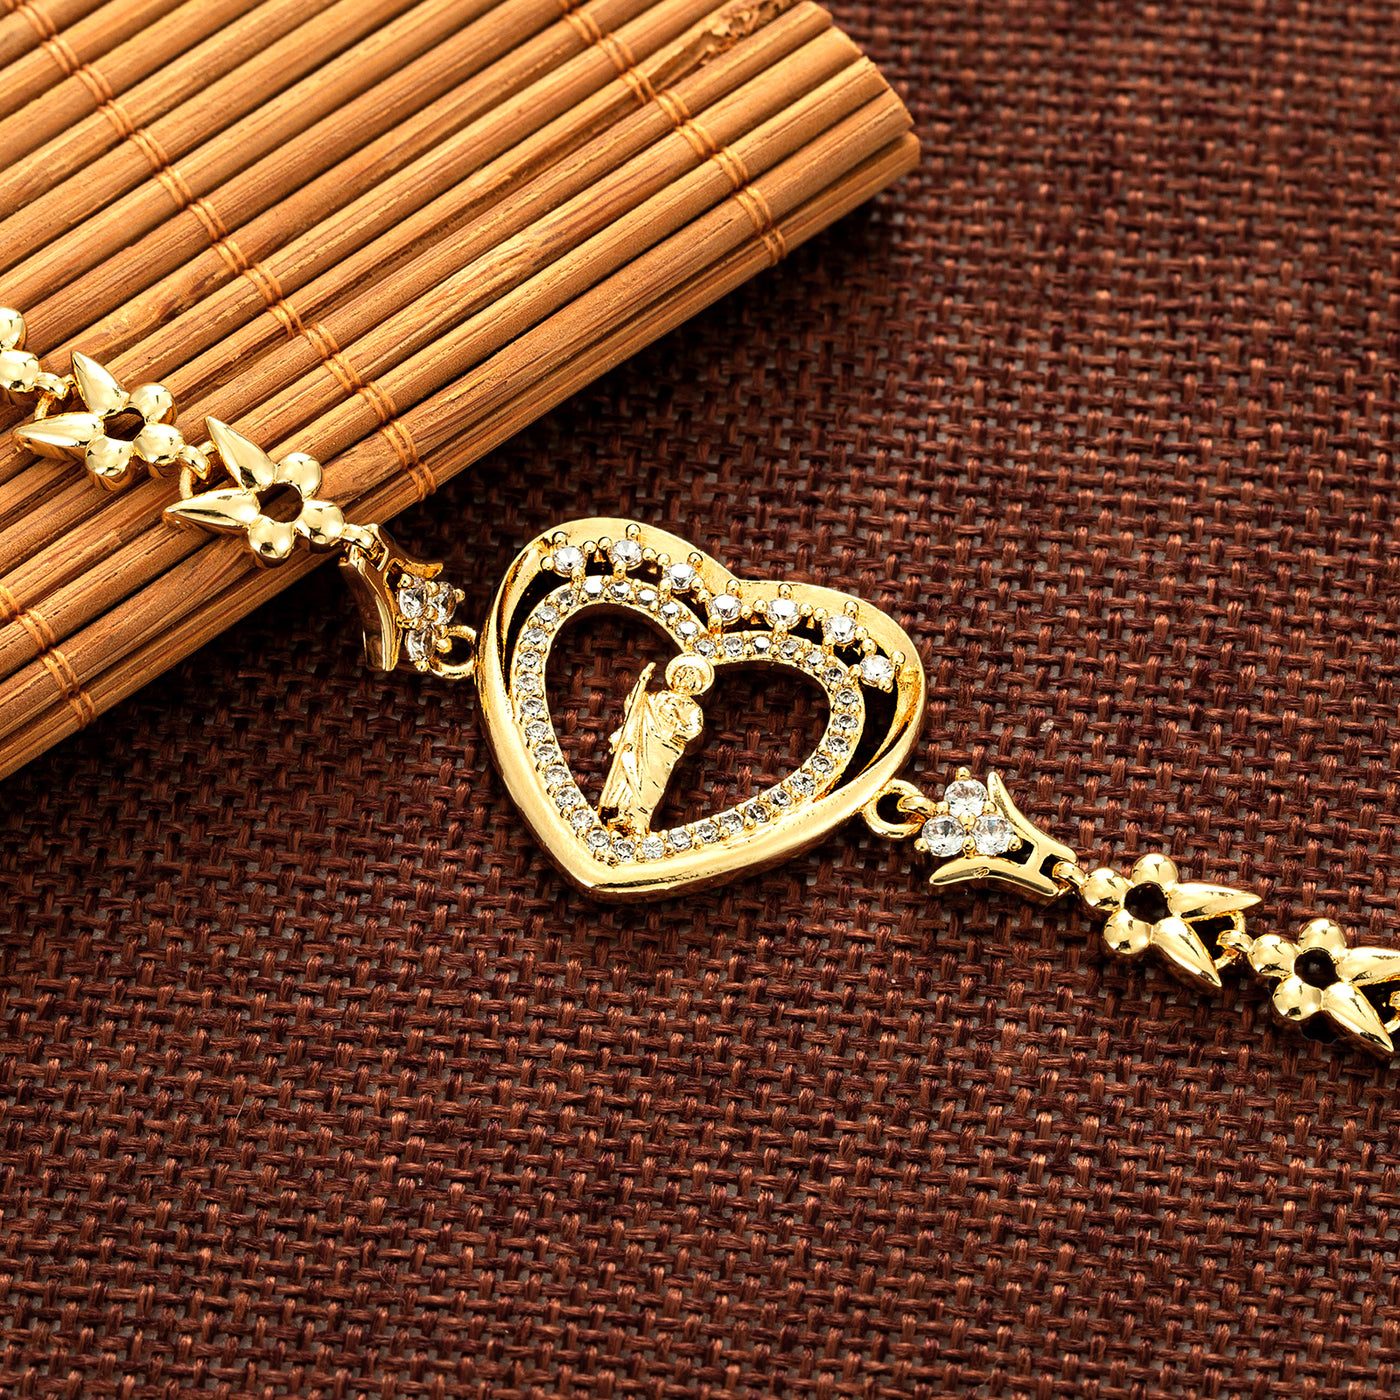 Saint Jude Heart CZ Bracelet - Luxe & Co. Jewelry